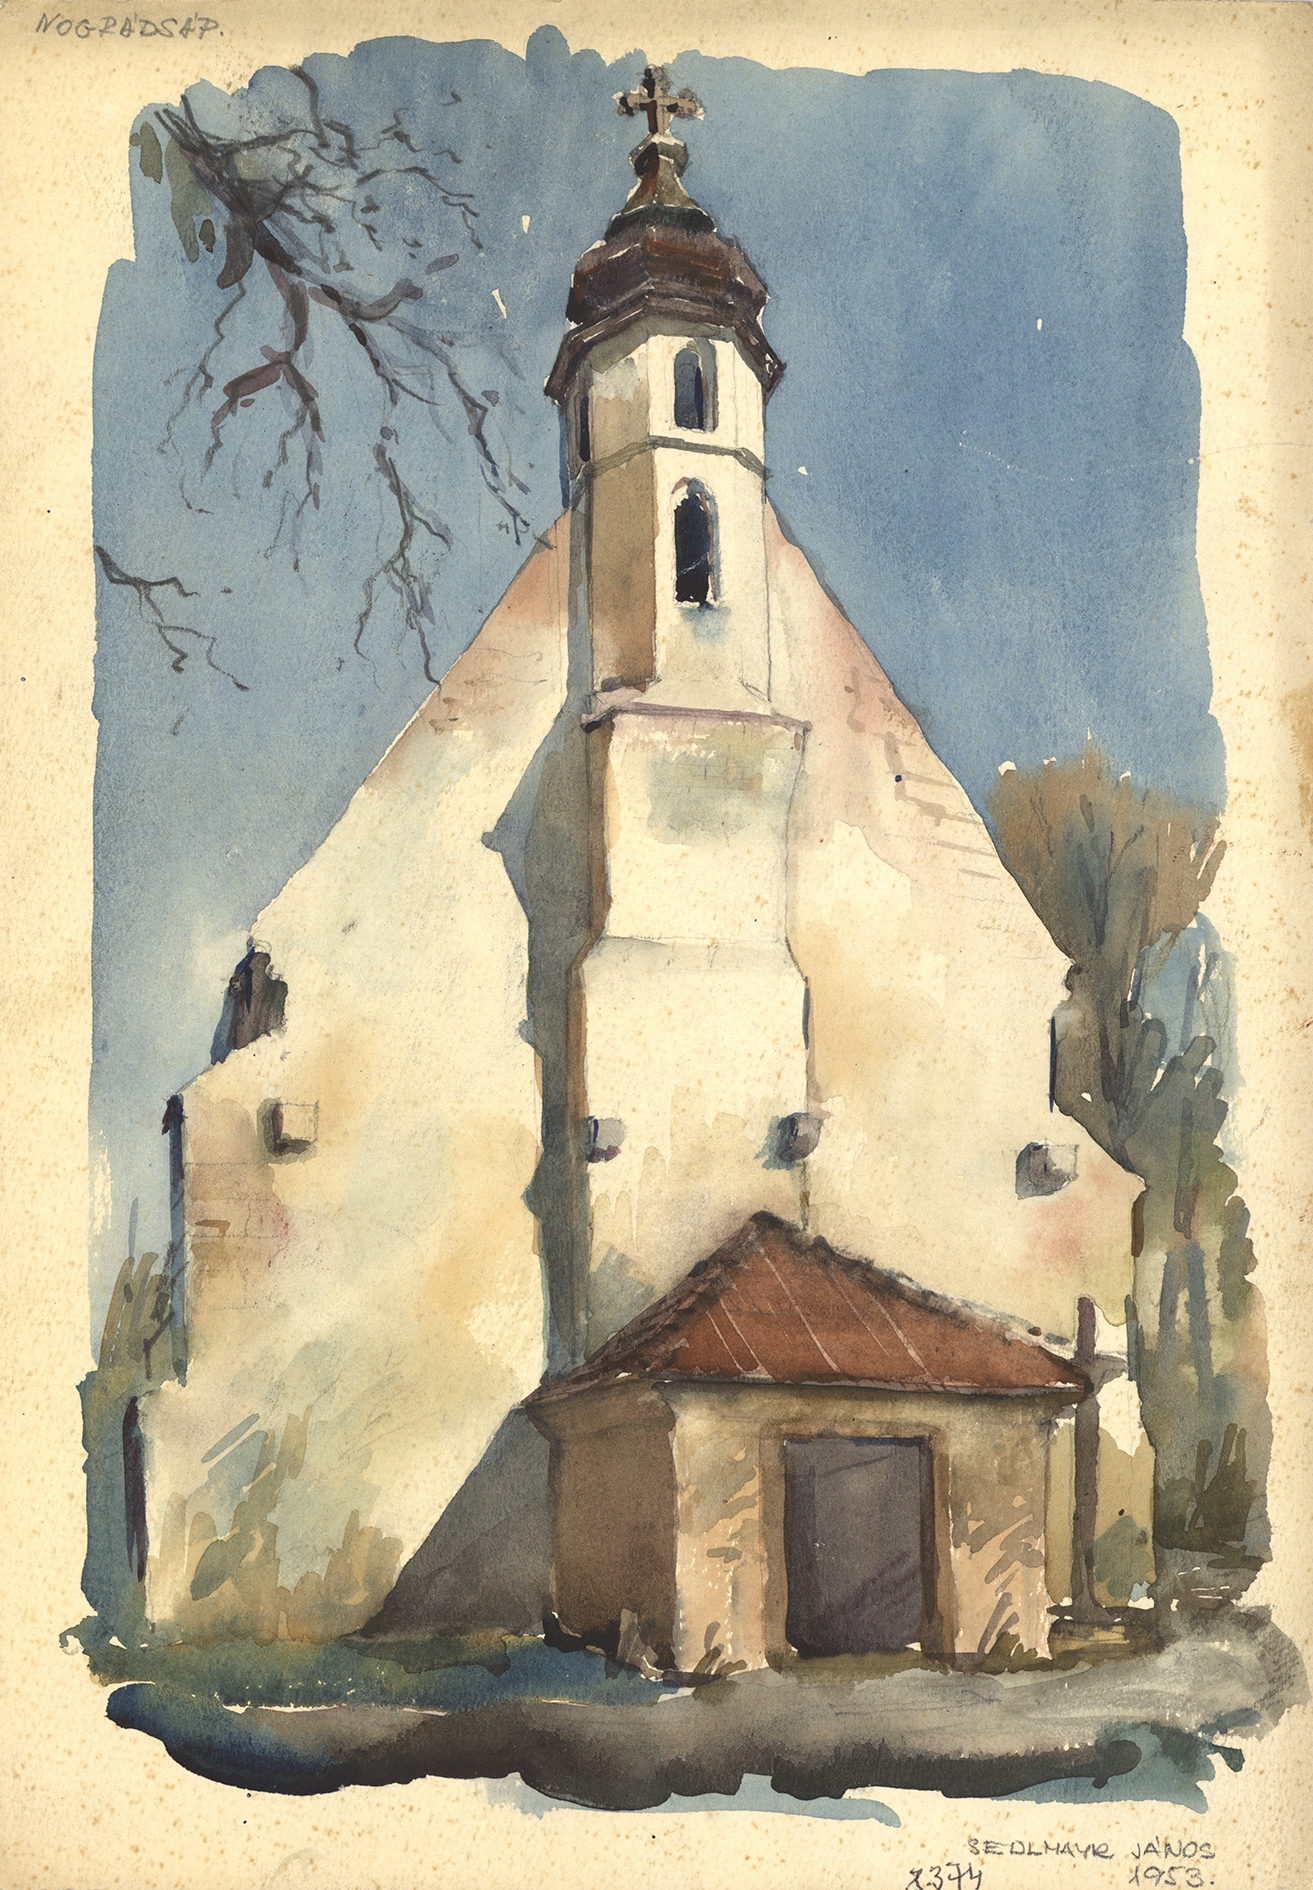 Nógrádsáp, r. k. templom. Sedlmayr János akvarellje, 1953